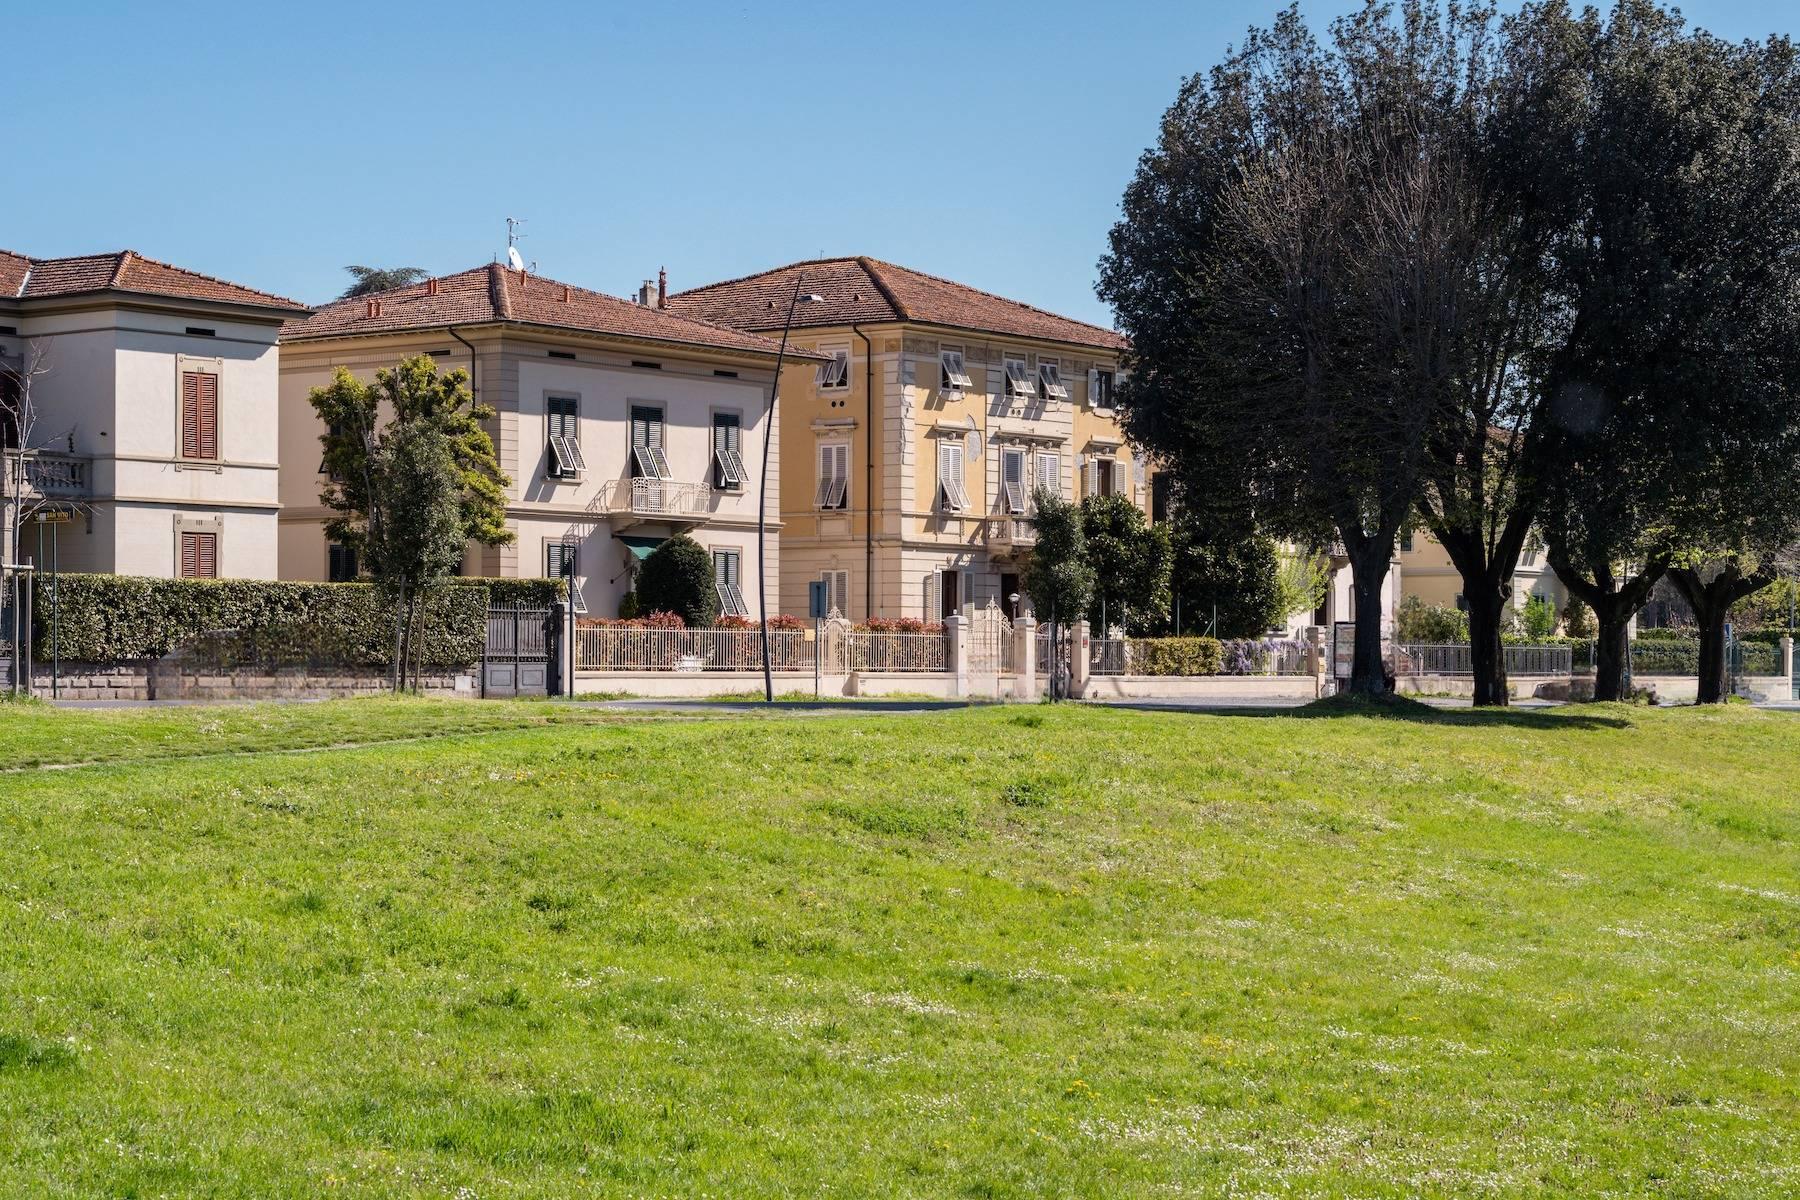 Esclusivo palazzo liberty a Lucca - 2